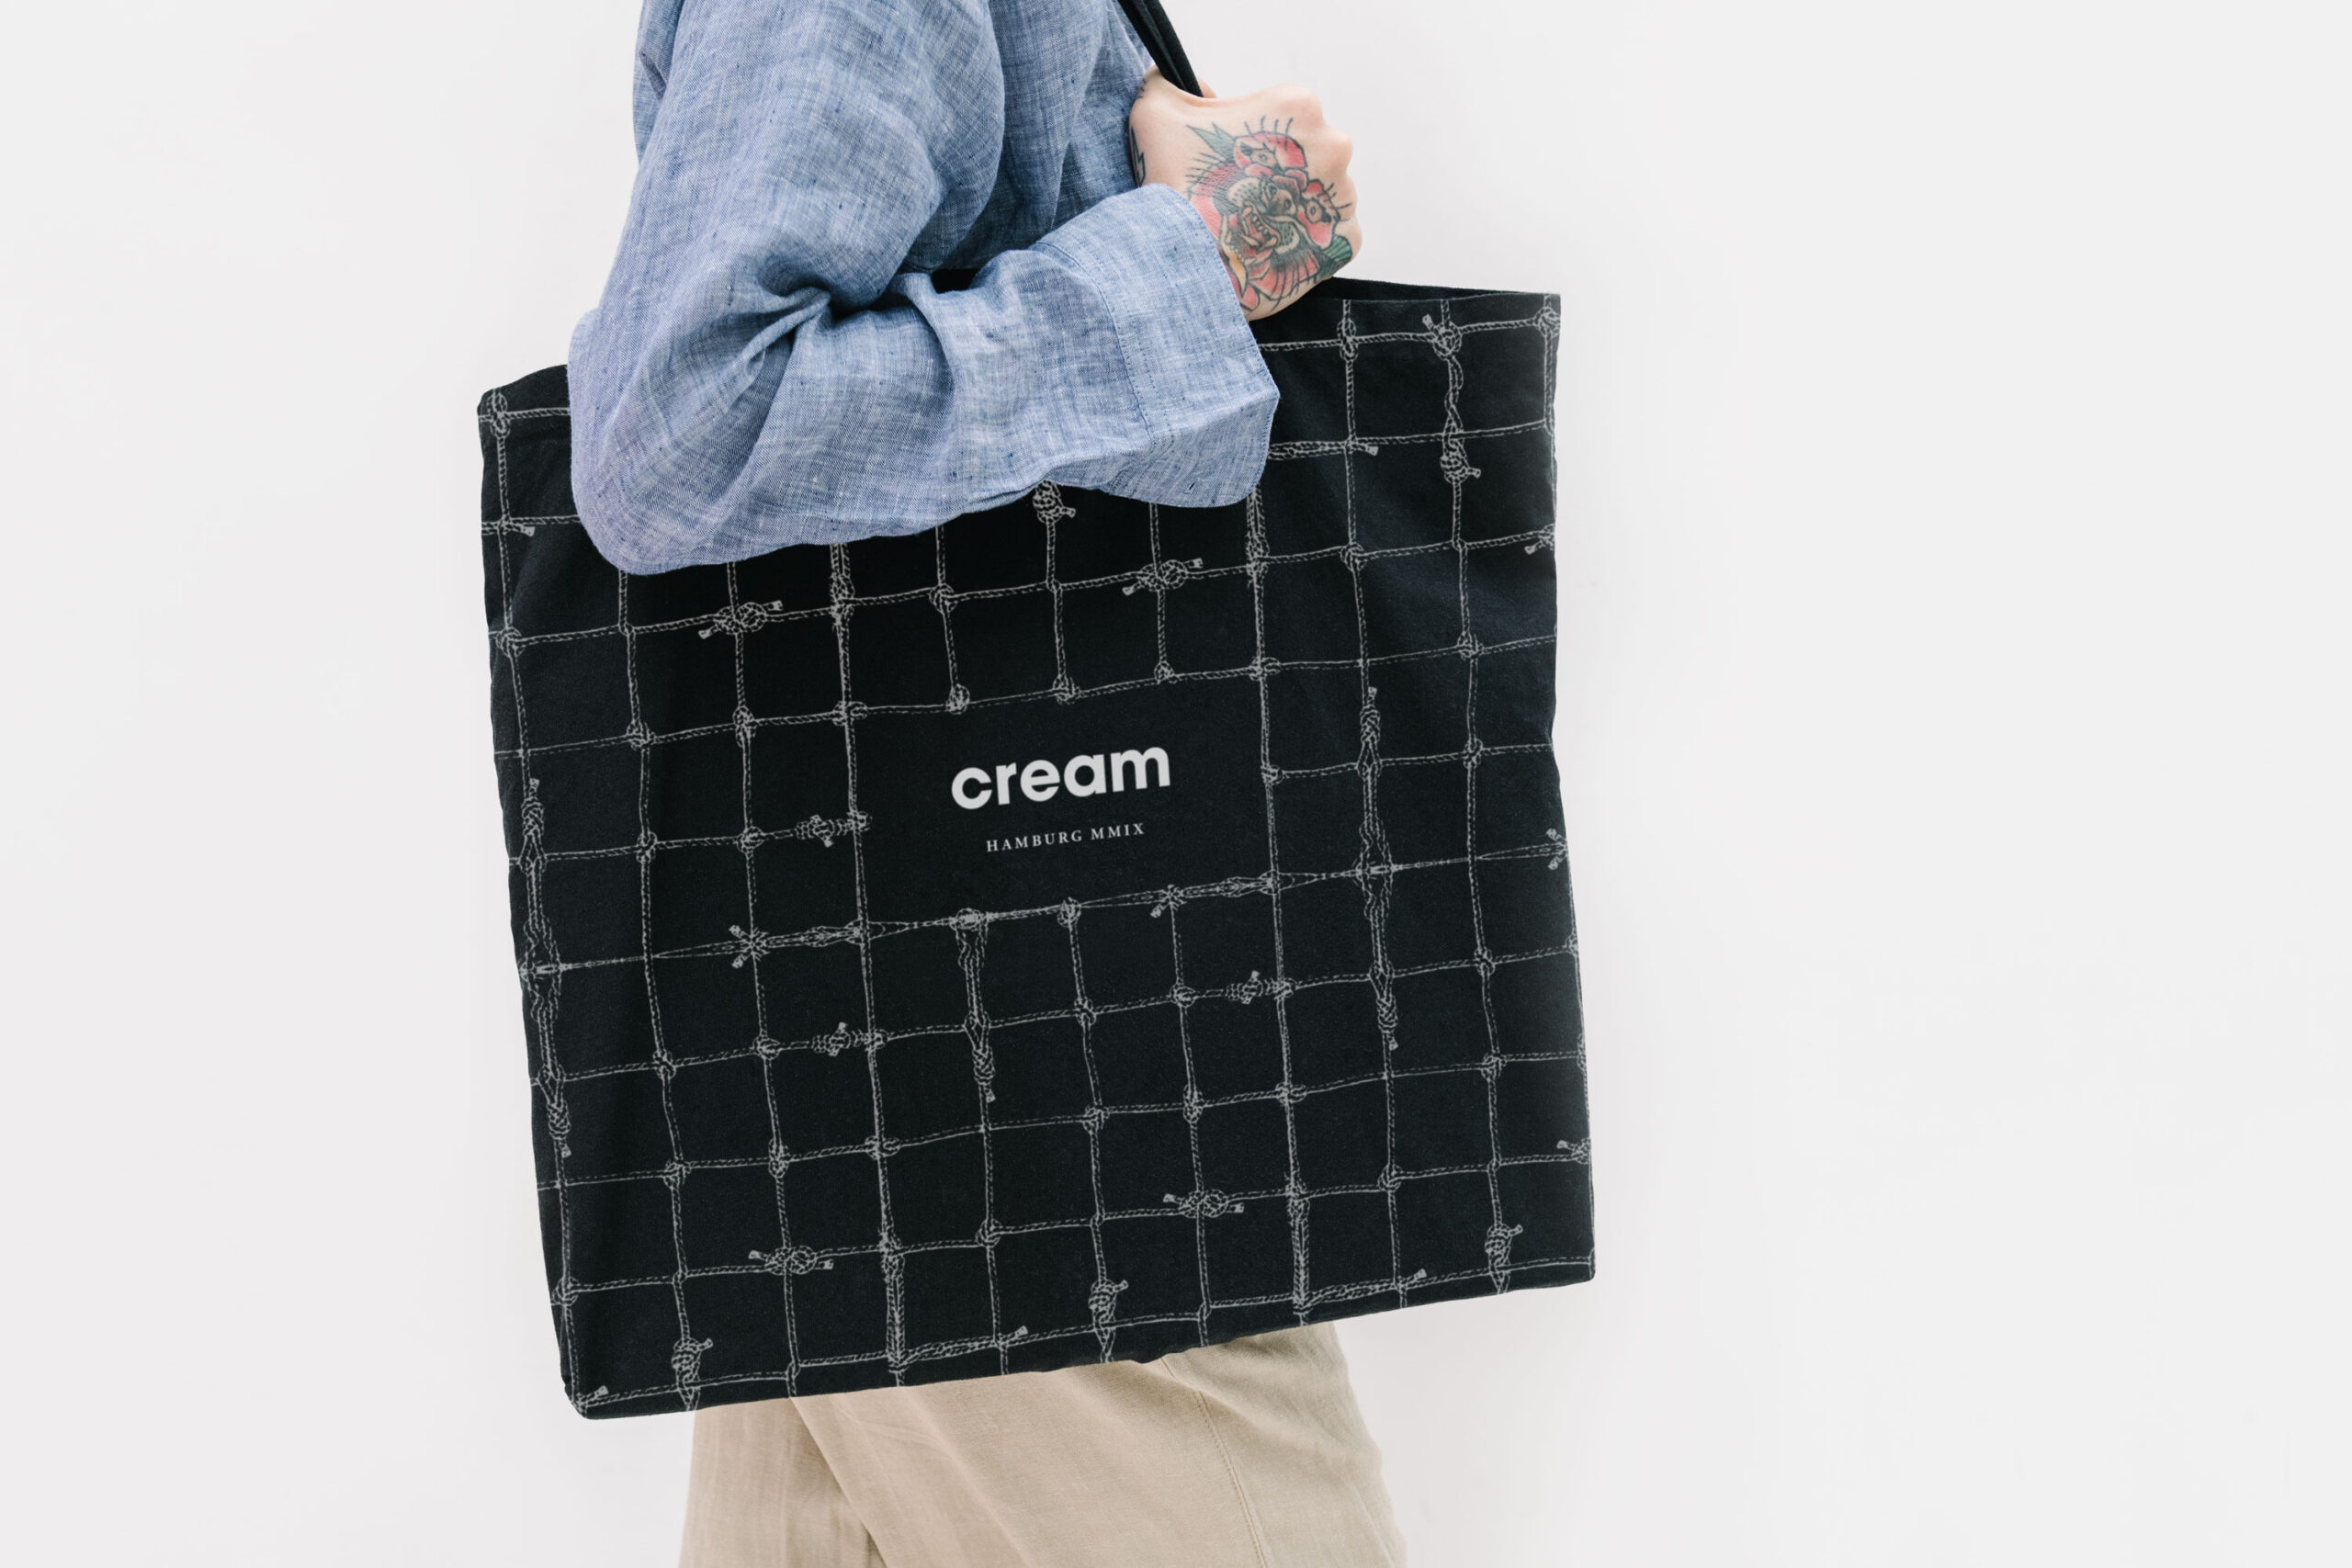 cream_tote_bag